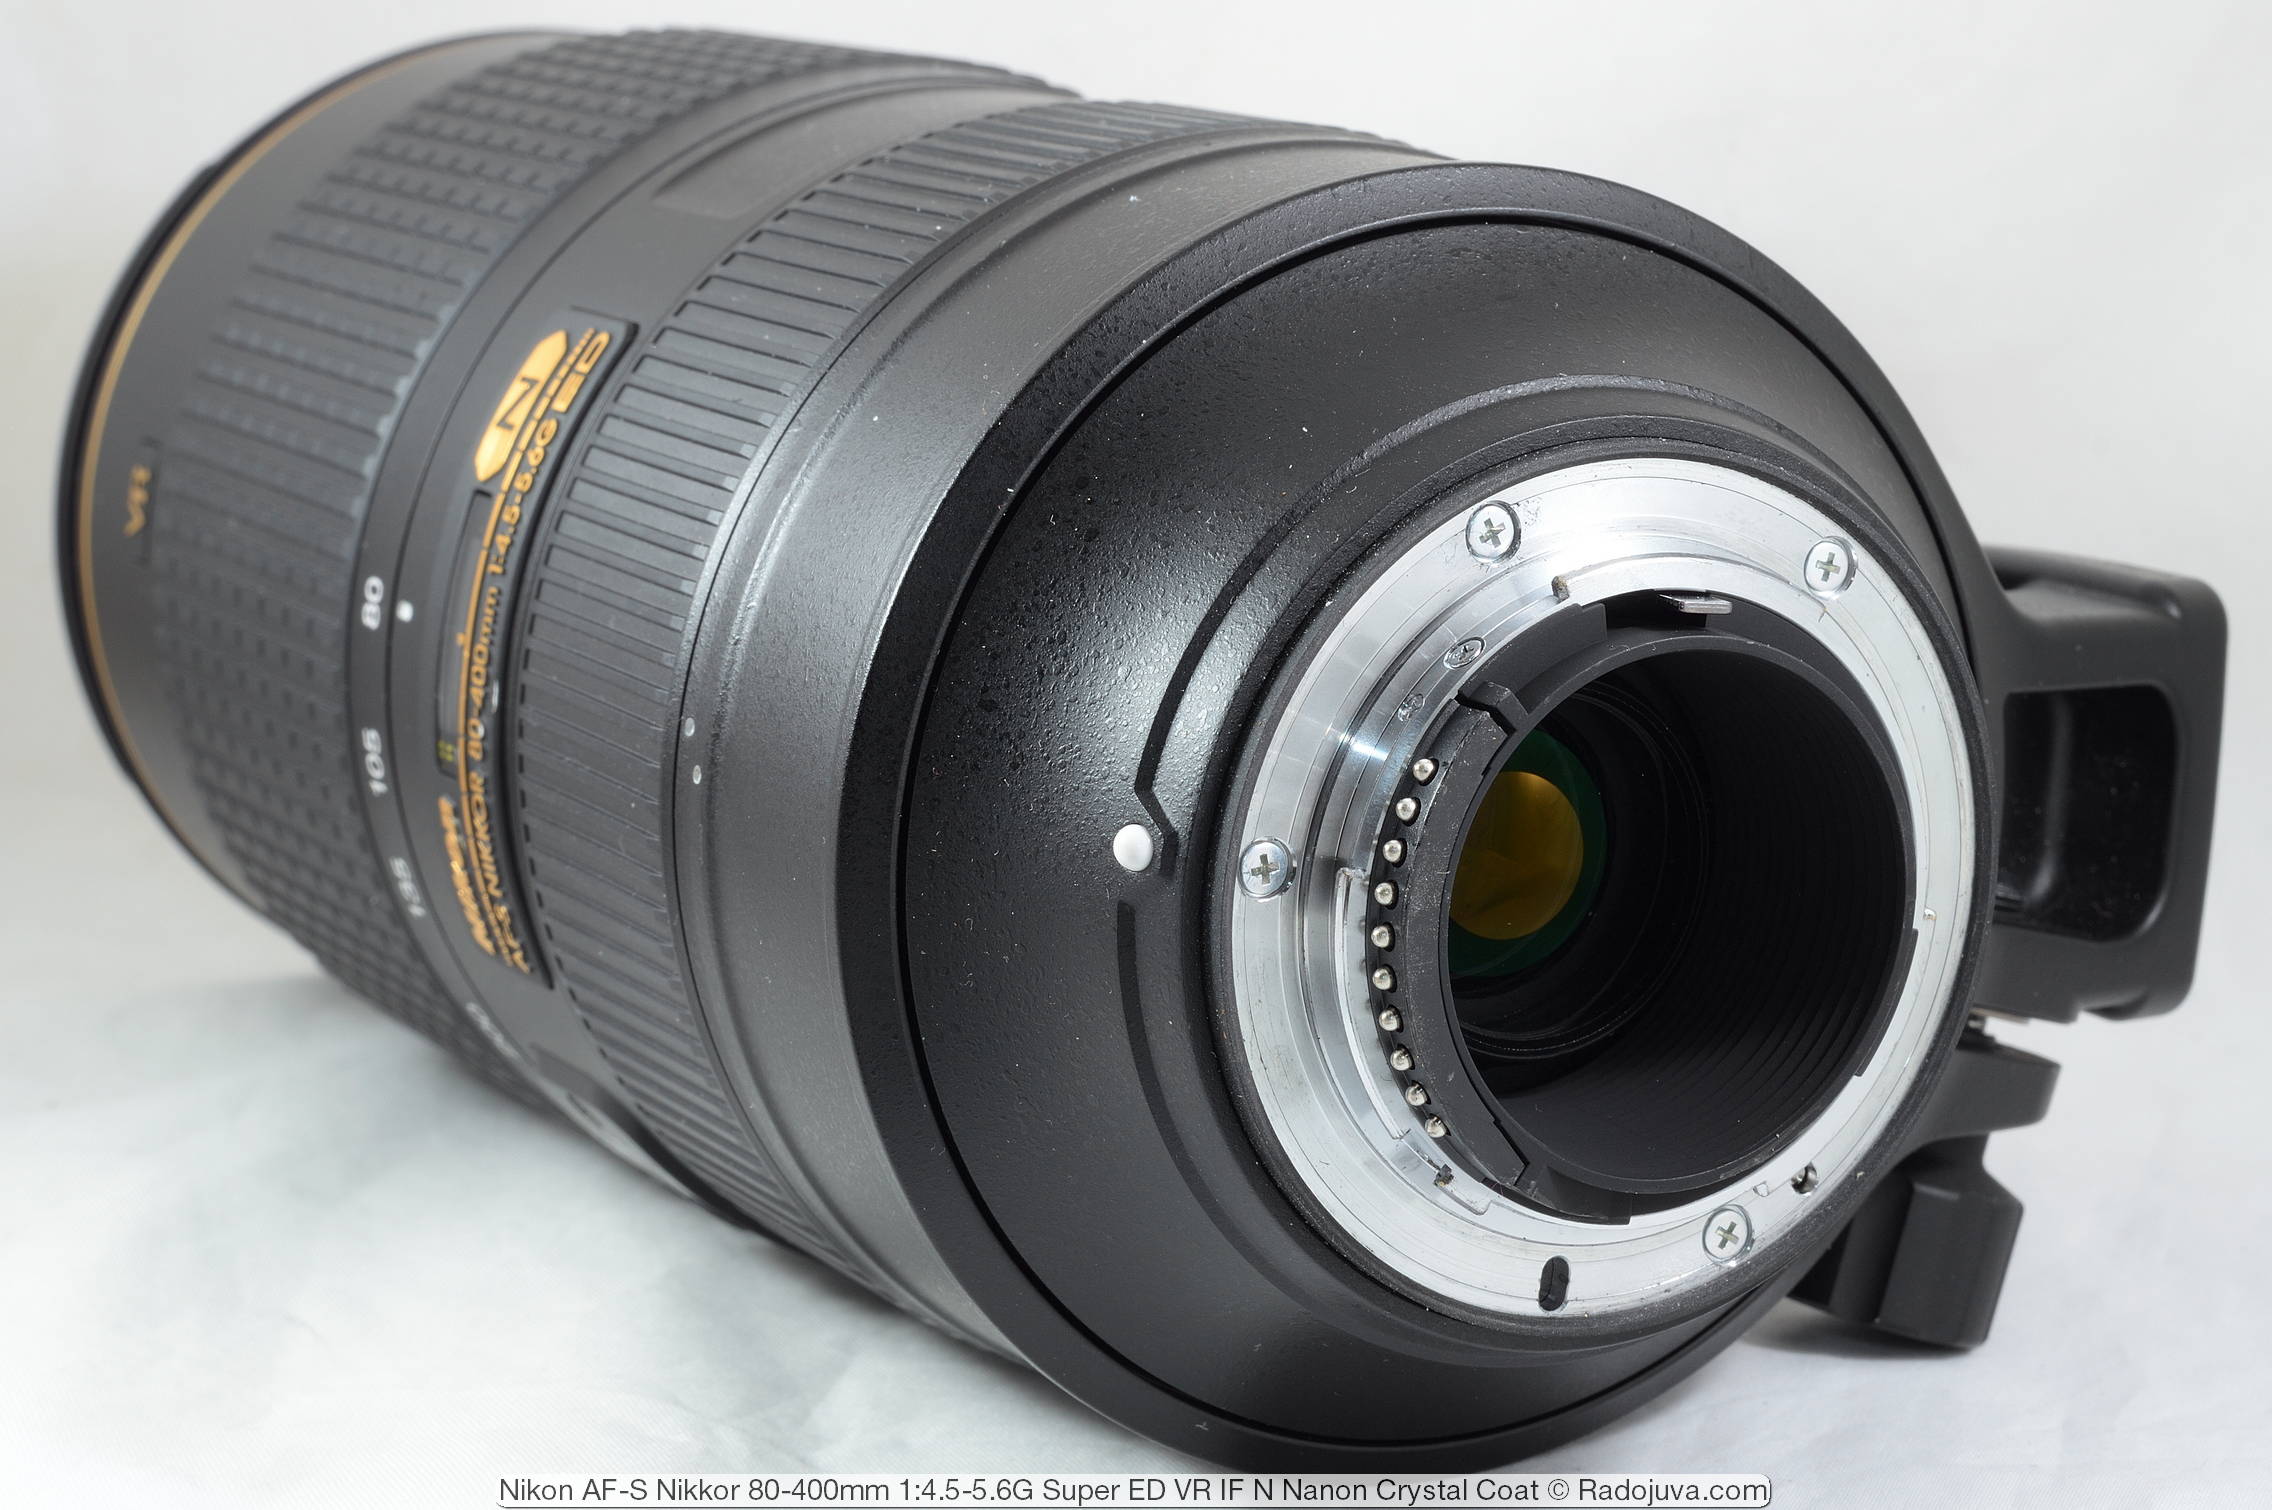 Lens Hood HB-65 Plastic Mount Lens Hood Replacement for Nikon AF-S Nikkor 80-400mm f/4.5-5.6 Lens